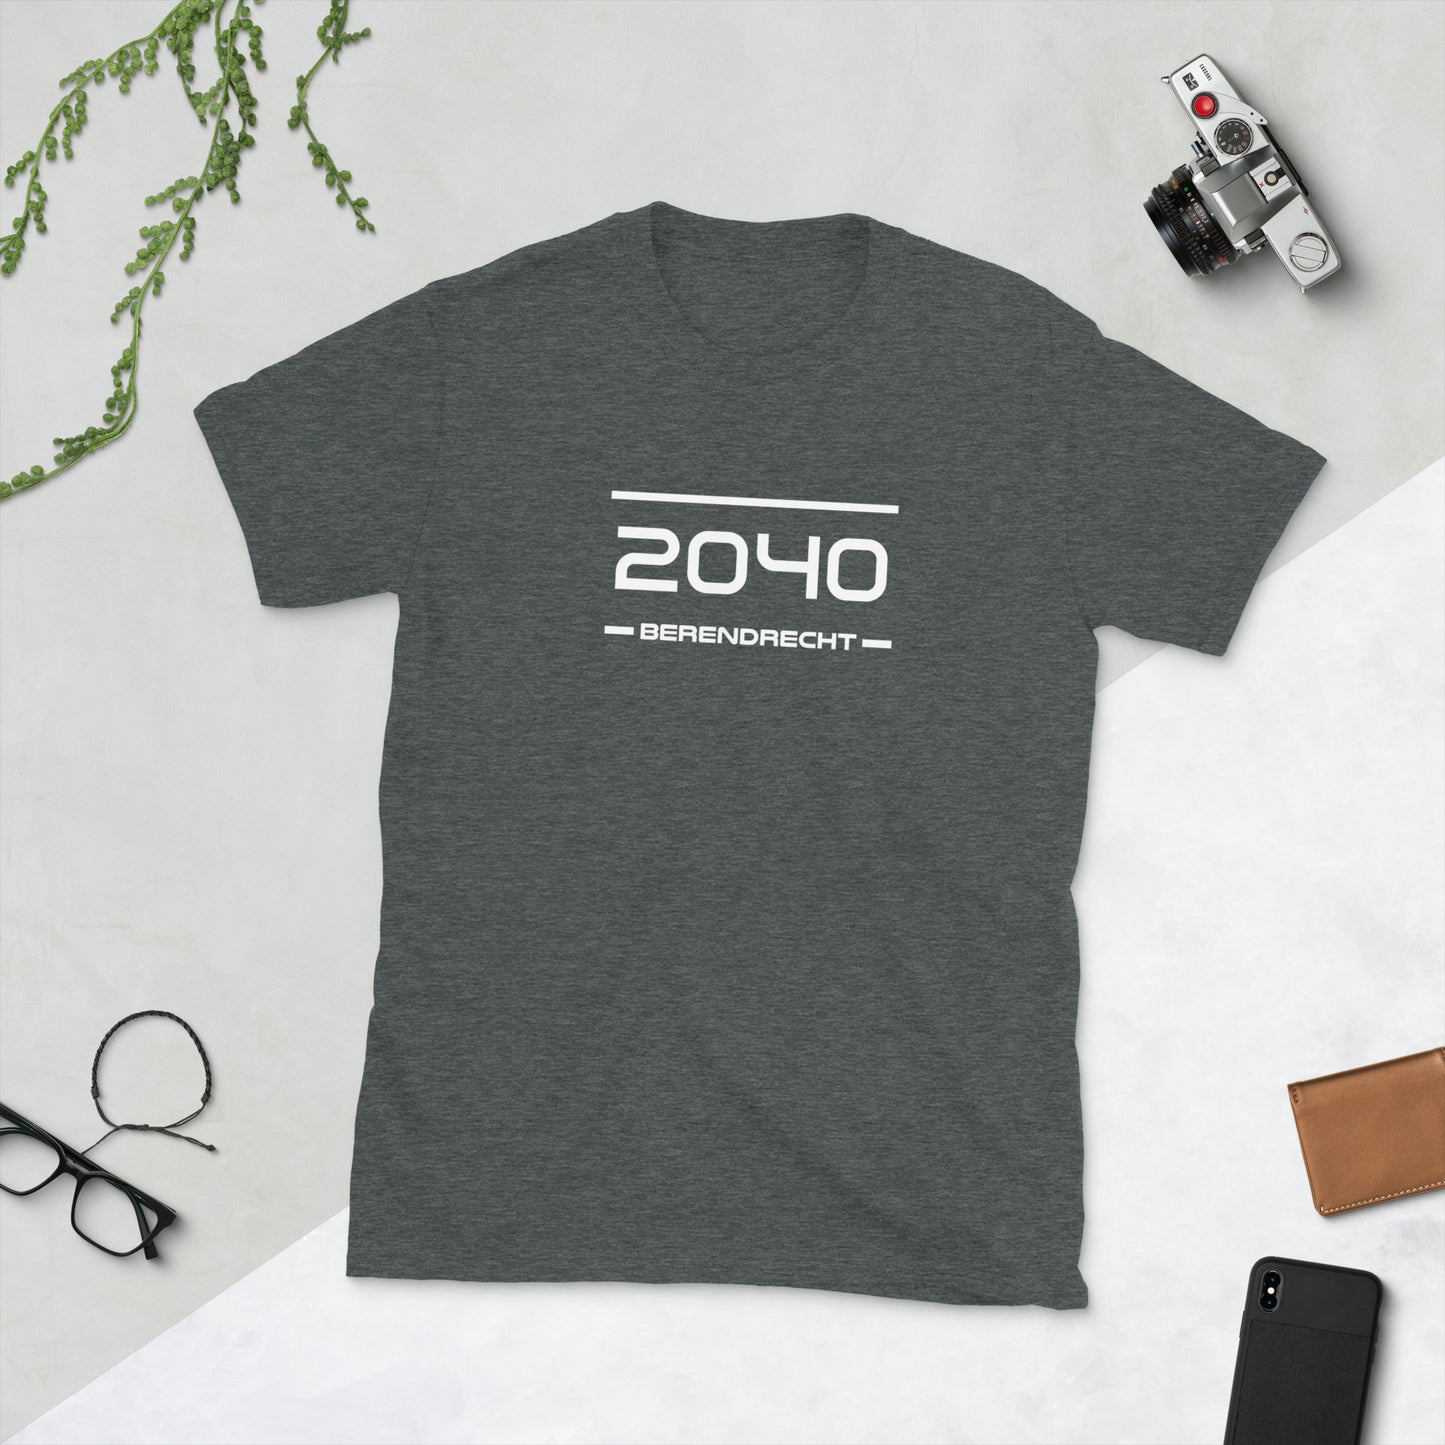 Tshirt - 2040 - Berendrecht